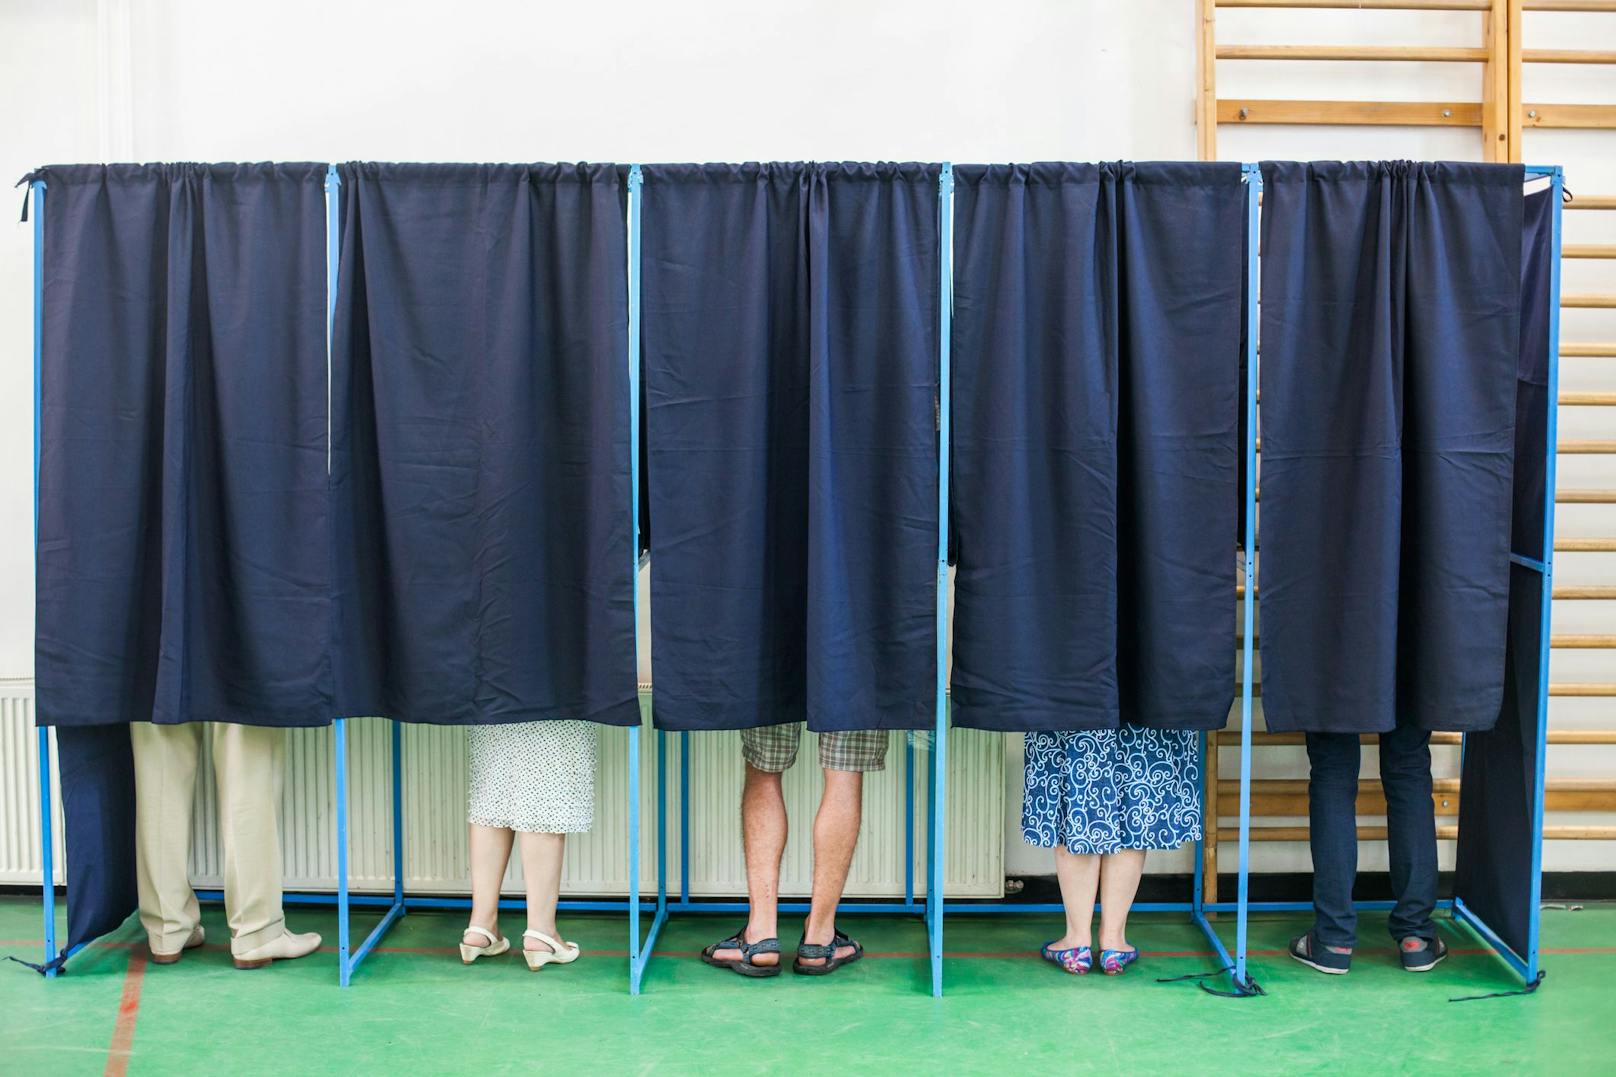 Frau geht allein in Wahlkabine – und verschwindet spurlos